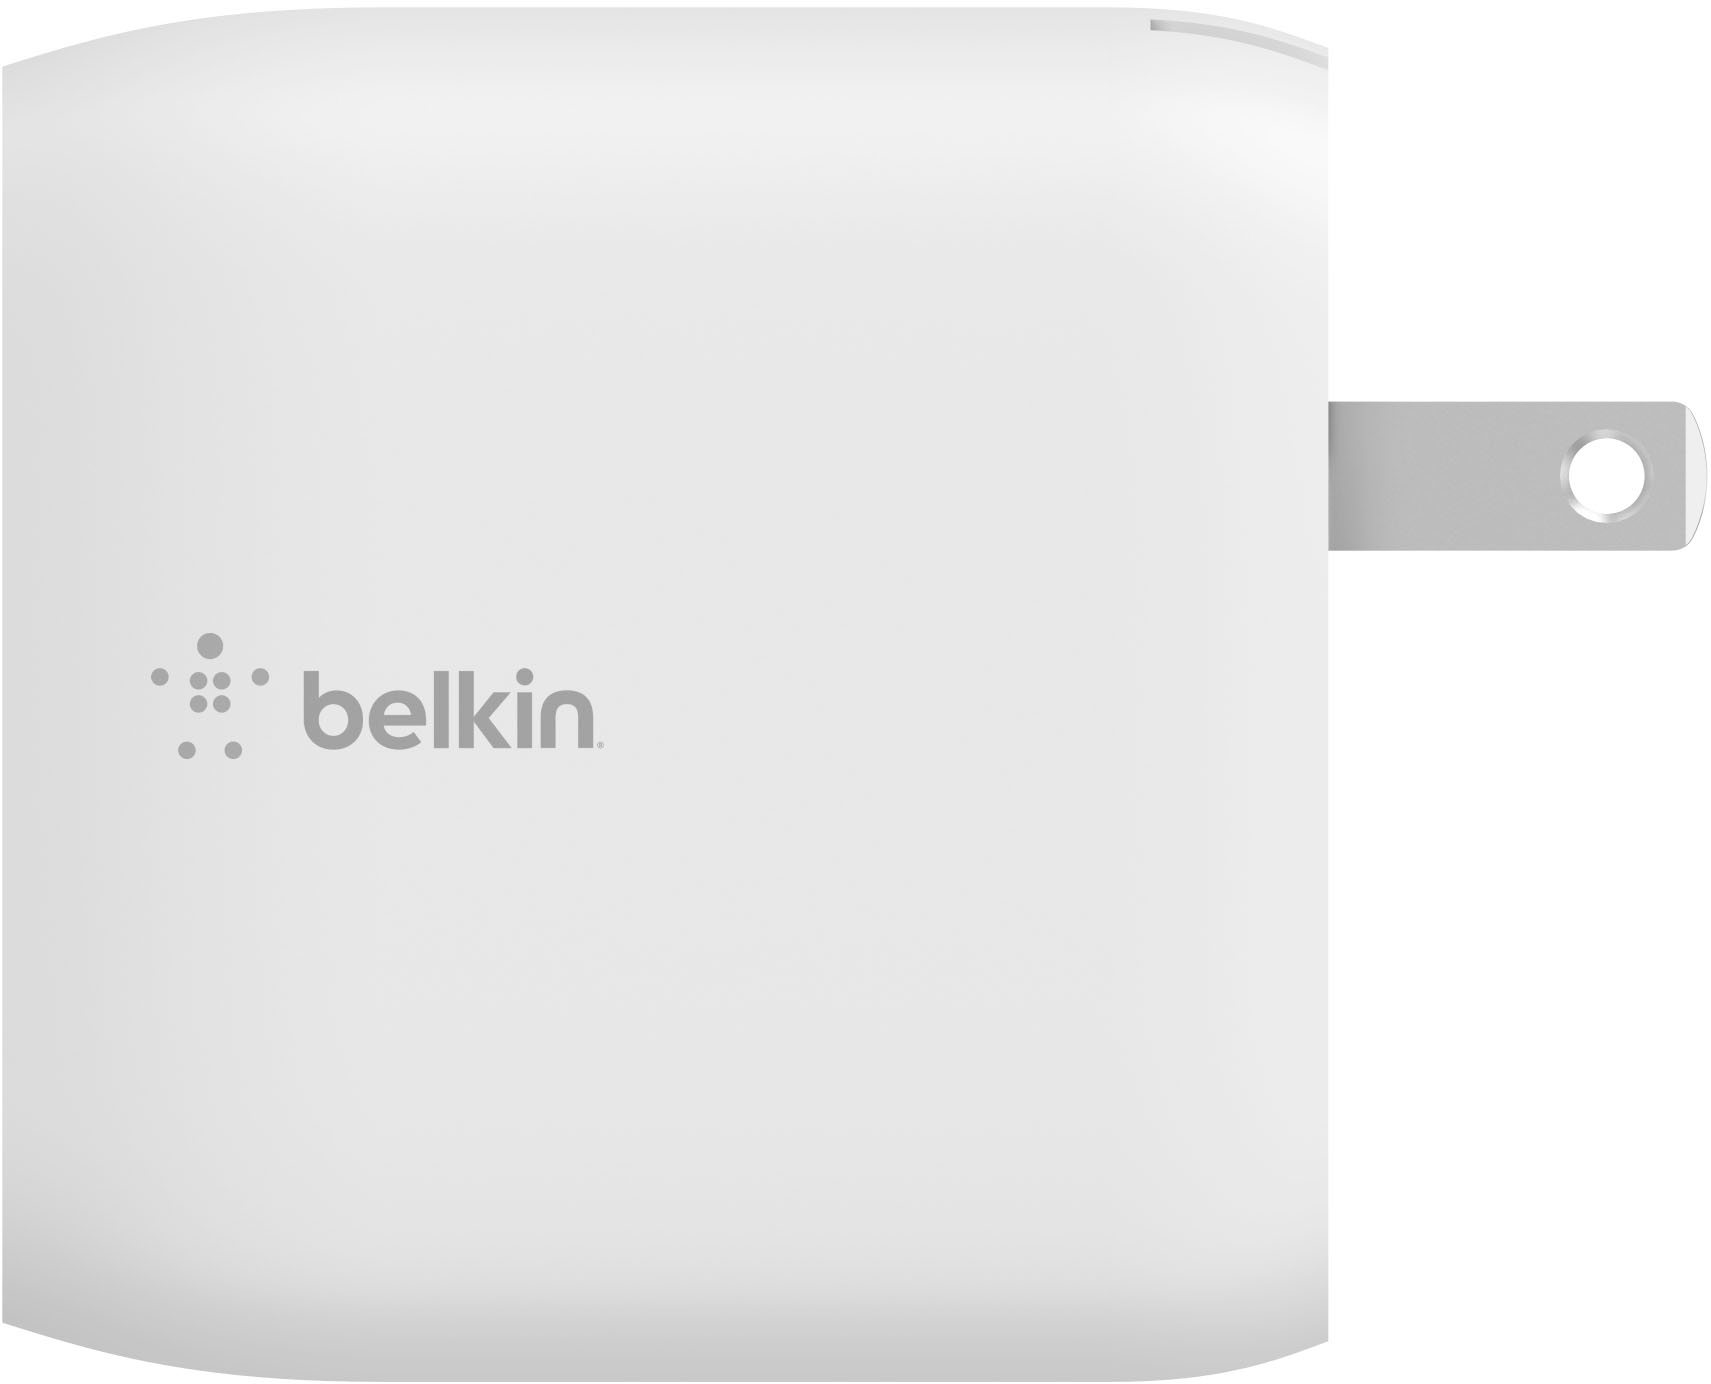 Belkin Parafoudre 4 Prises 2 Mètres USB-C Blanc - Coolblue - avant